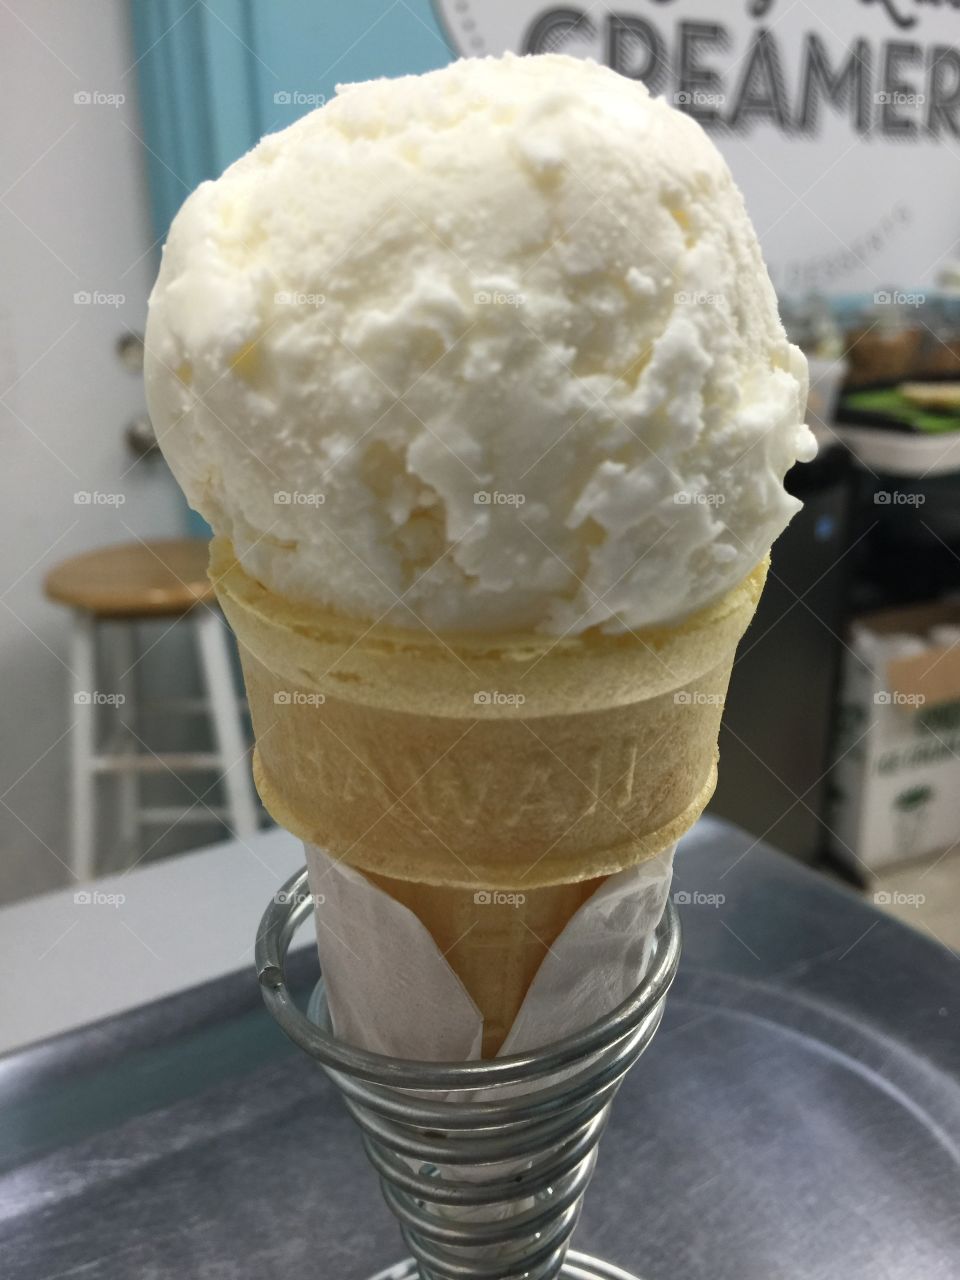 Ice Cream from Lucy's Lab - Honolulu, Hawaii